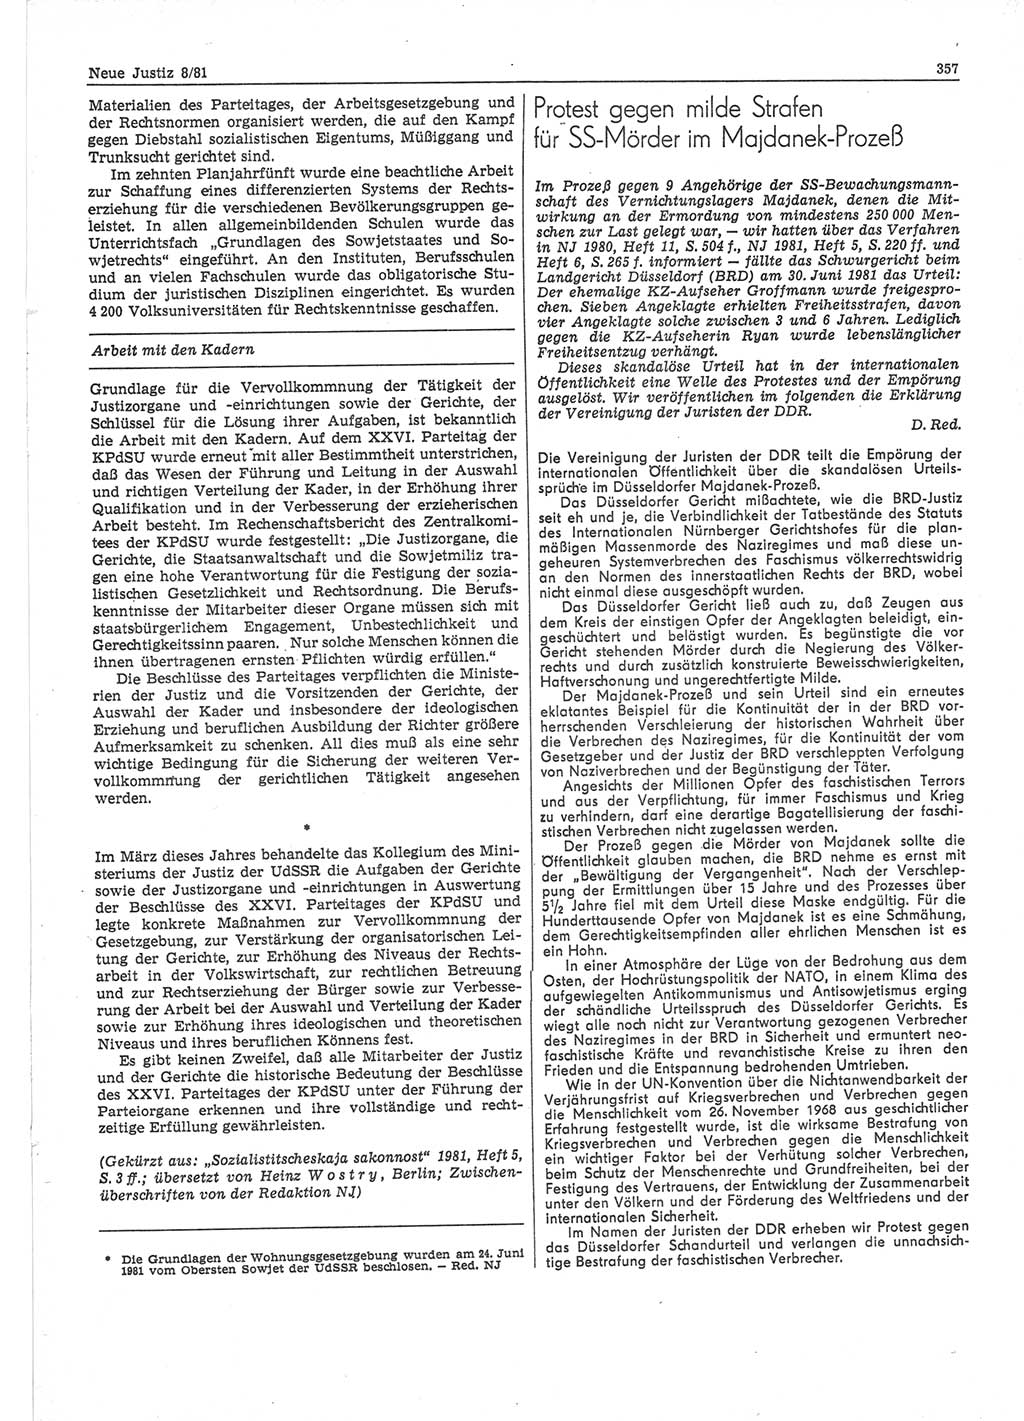 Neue Justiz (NJ), Zeitschrift für sozialistisches Recht und Gesetzlichkeit [Deutsche Demokratische Republik (DDR)], 35. Jahrgang 1981, Seite 357 (NJ DDR 1981, S. 357)